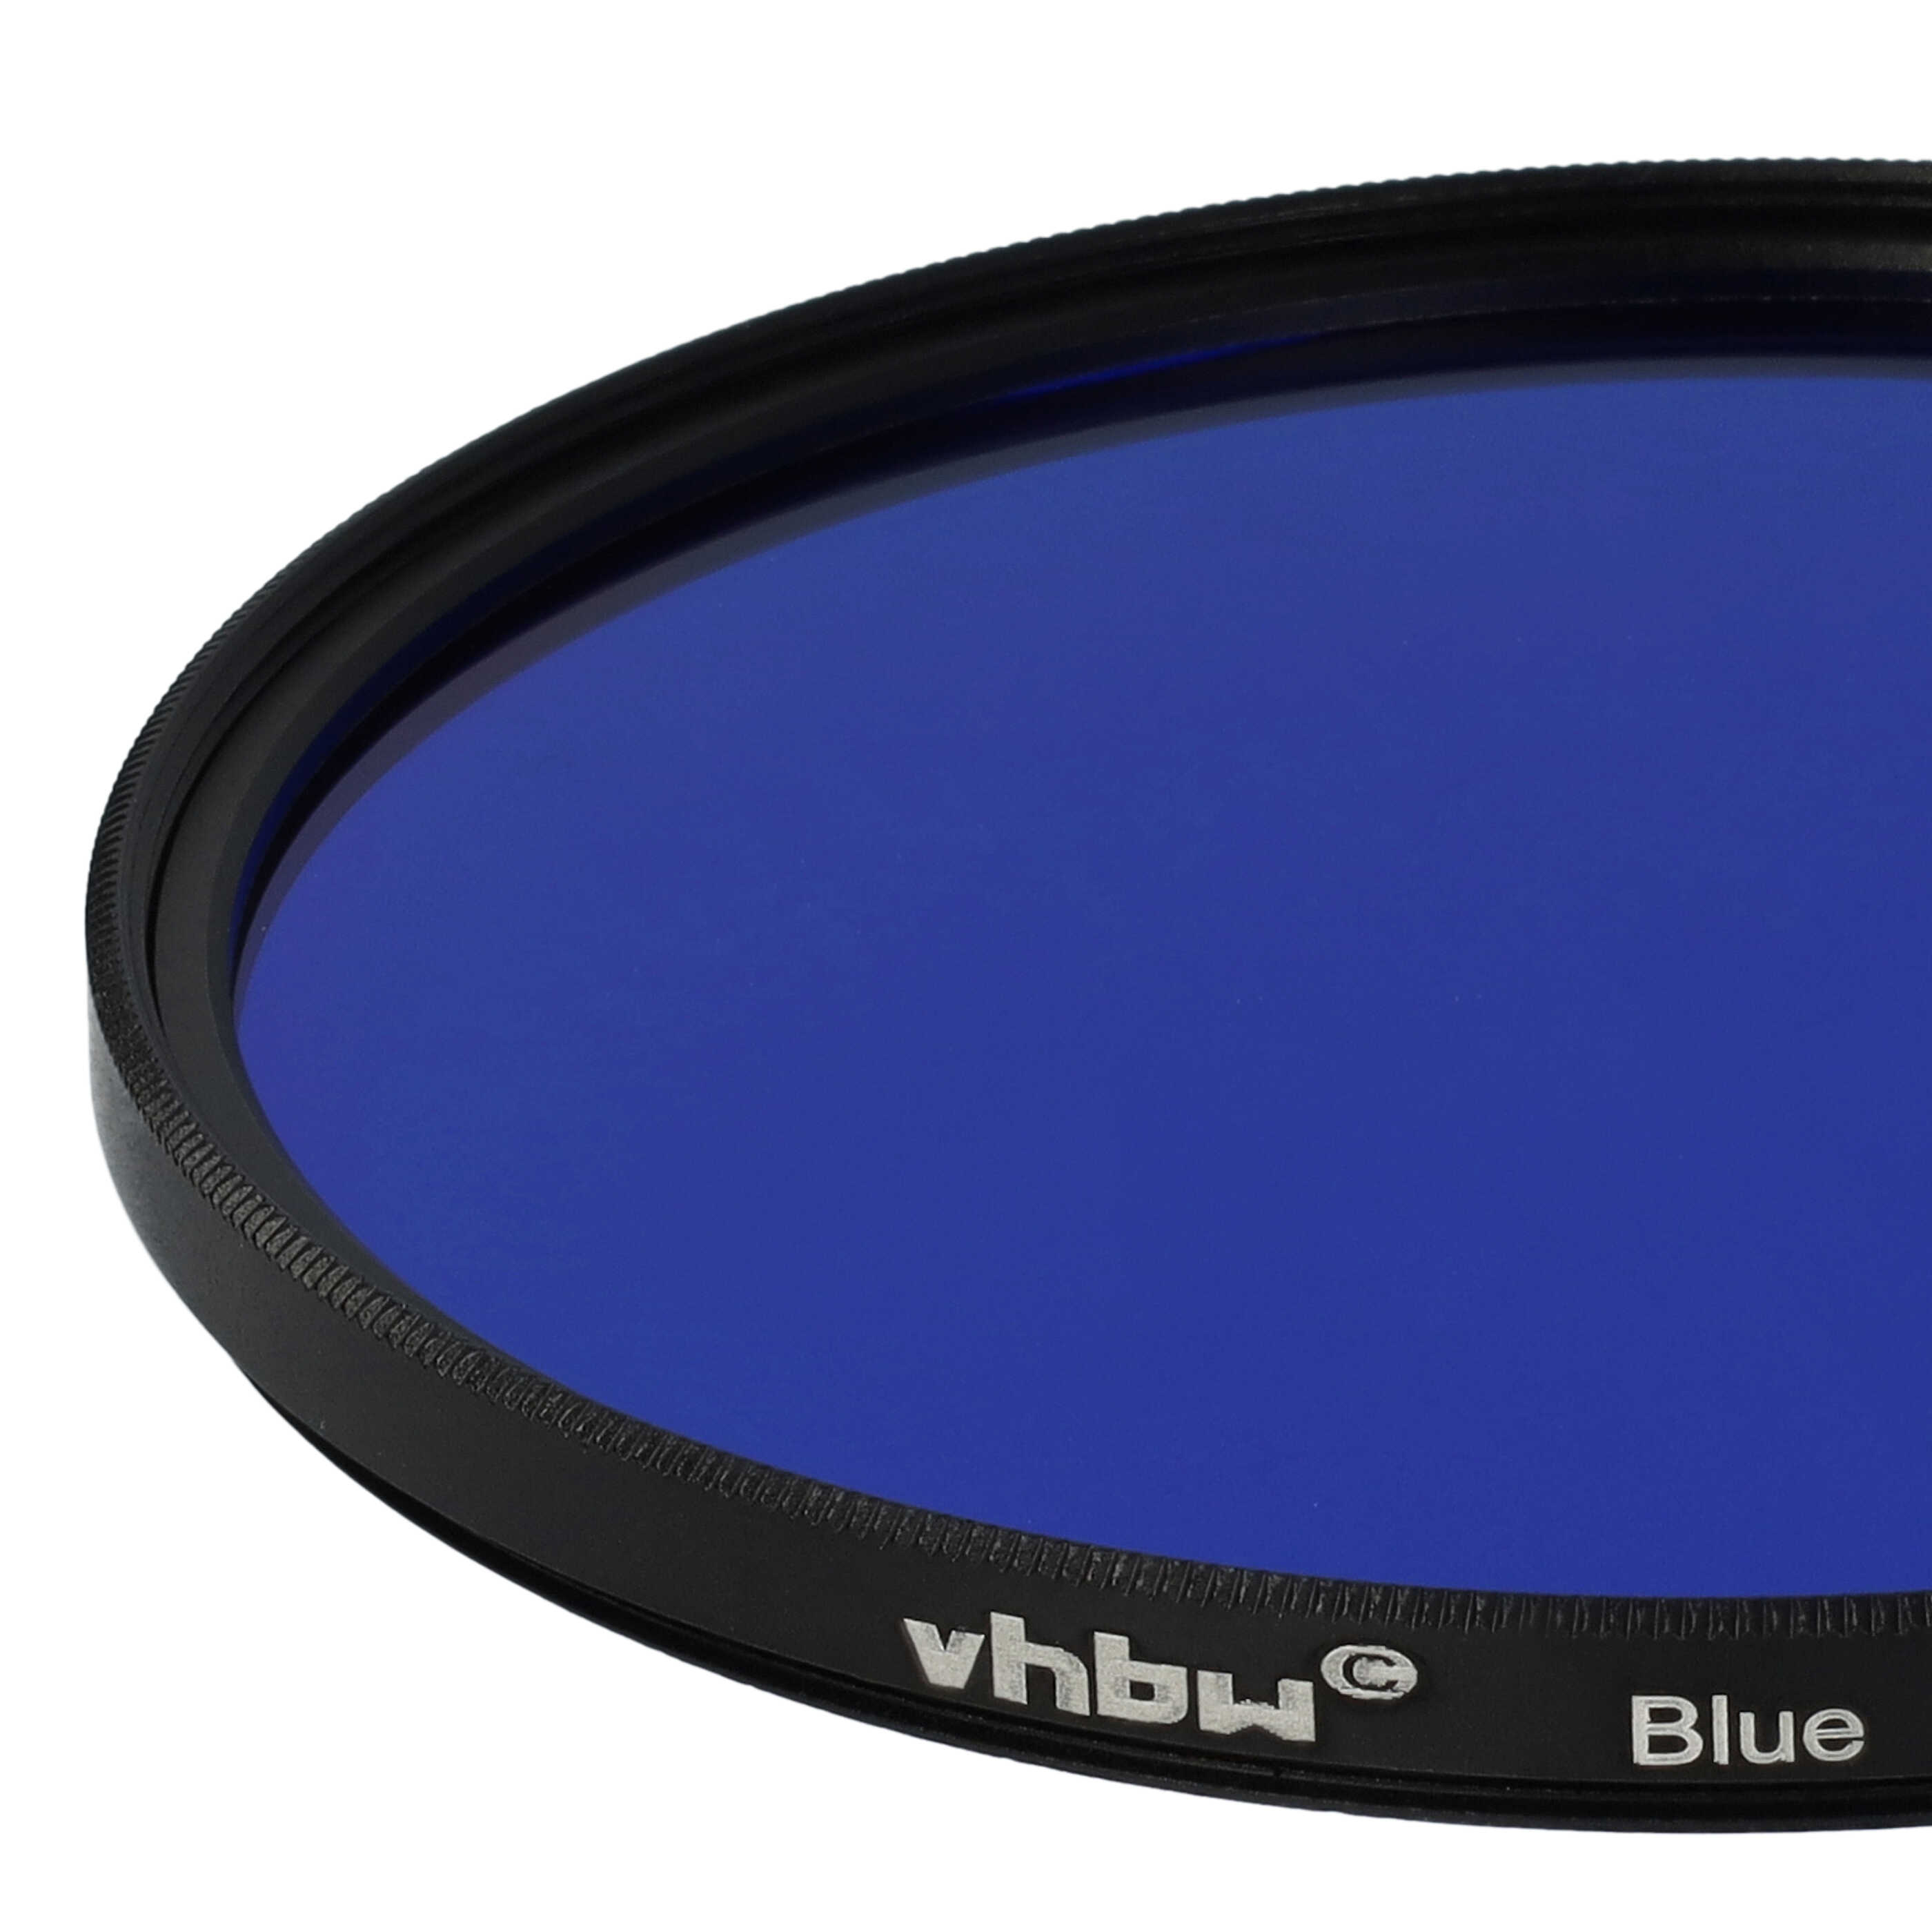 Filtre de couleur bleu pour objectifs d'appareils photo de 77 mm - Filtre bleu